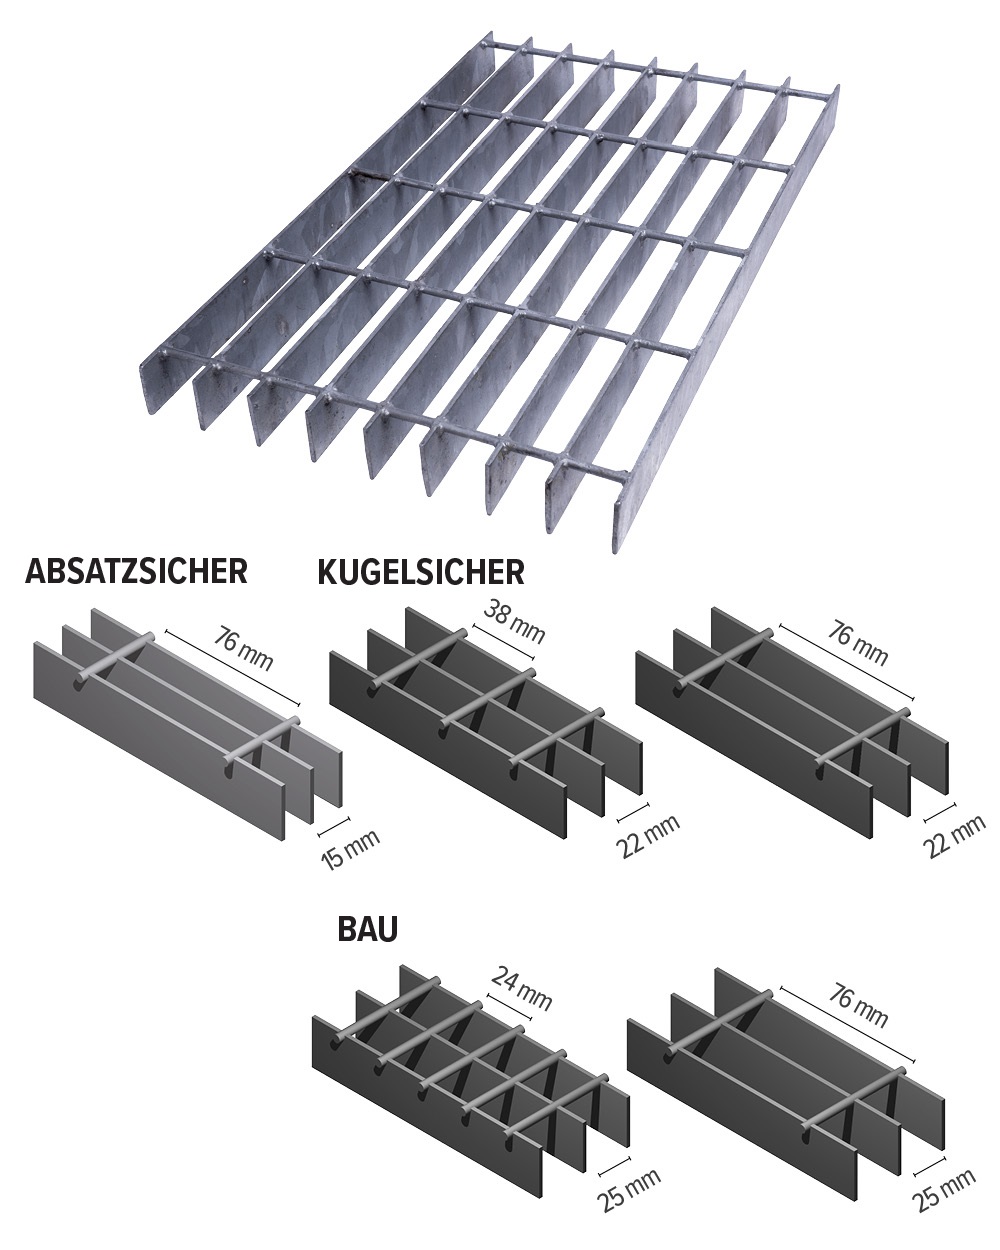 Potissimum Bau: Technische Details Stahlgitterroste für Bau